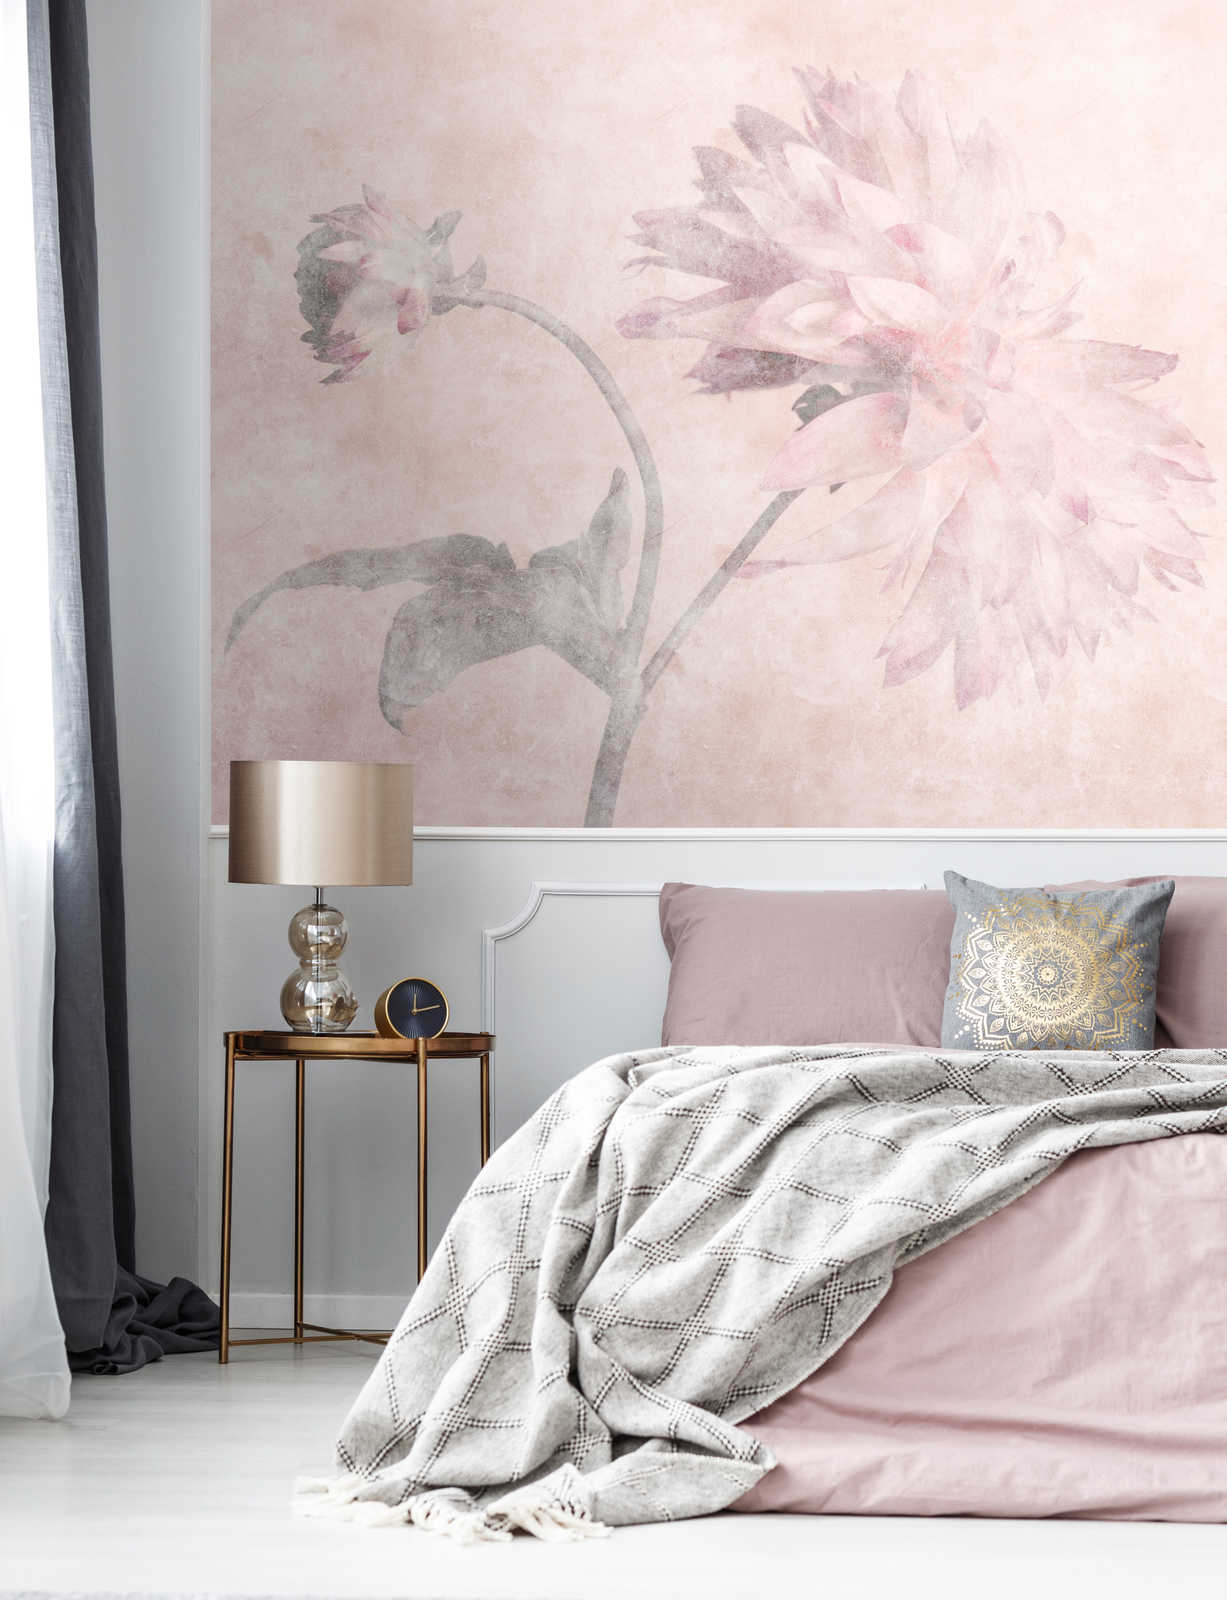             Morning Room 2 – Blumen Fototapete Dahlien im verblassten Stil
        